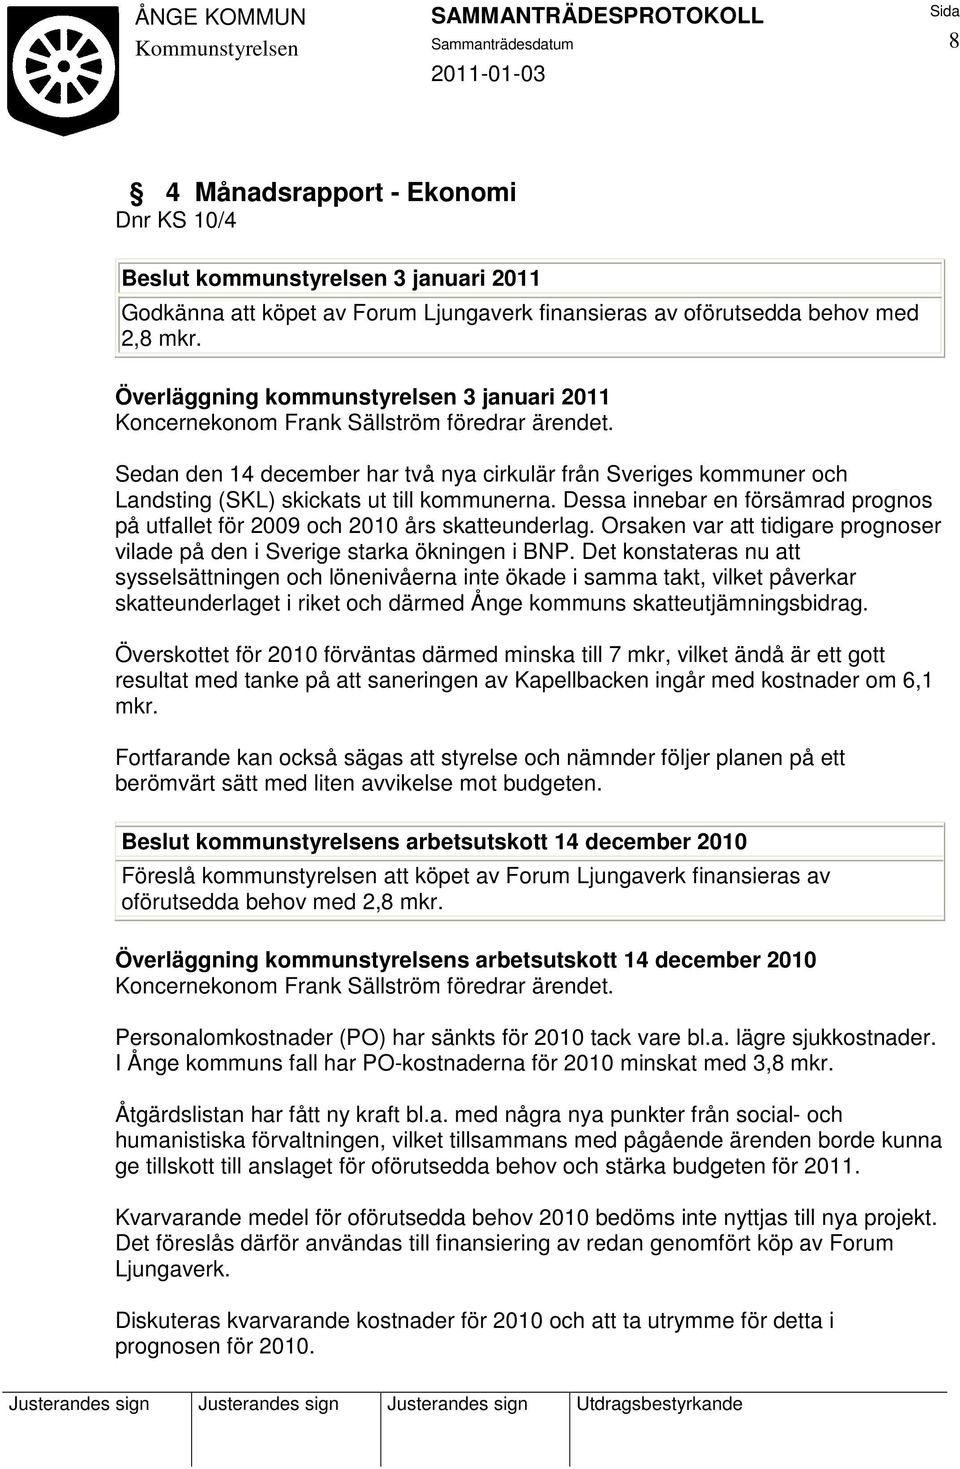 Sedan den 14 december har två nya cirkulär från Sveriges kommuner och Landsting (SKL) skickats ut till kommunerna. Dessa innebar en försämrad prognos på utfallet för 2009 och 2010 års skatteunderlag.